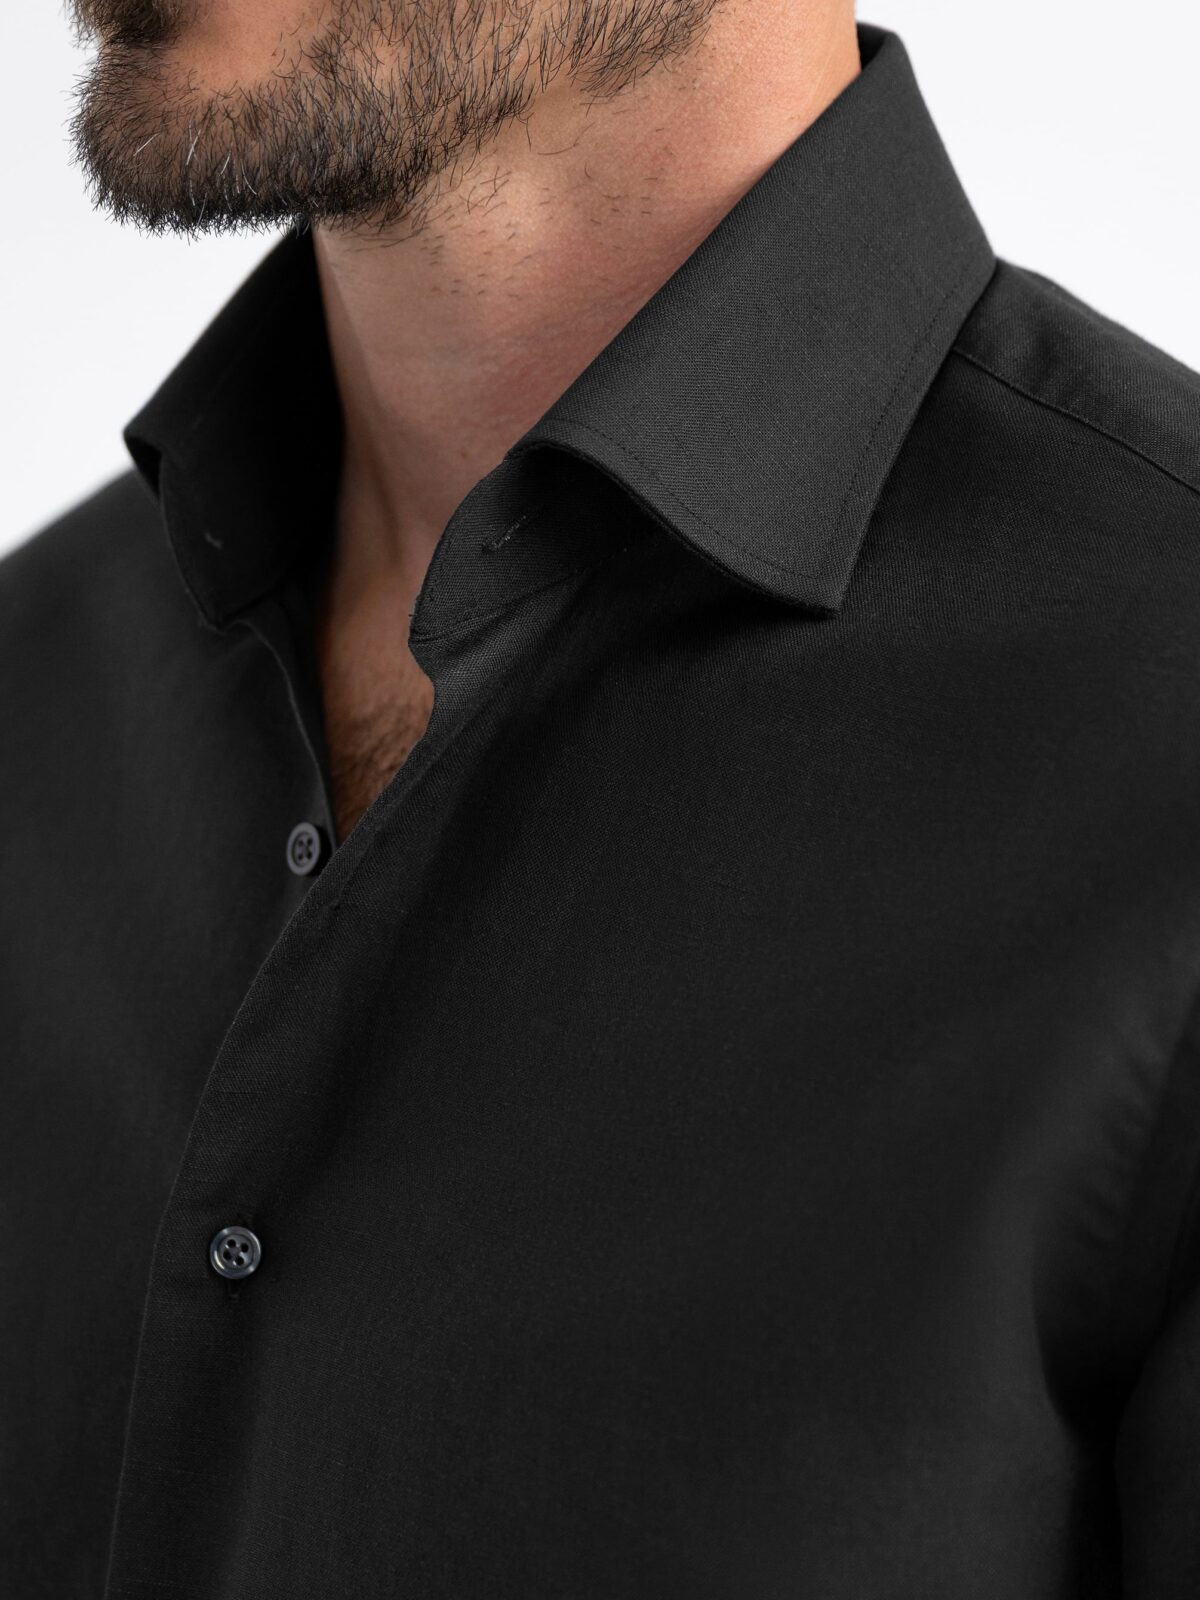 Black Cotton and Linen Blend Shirt